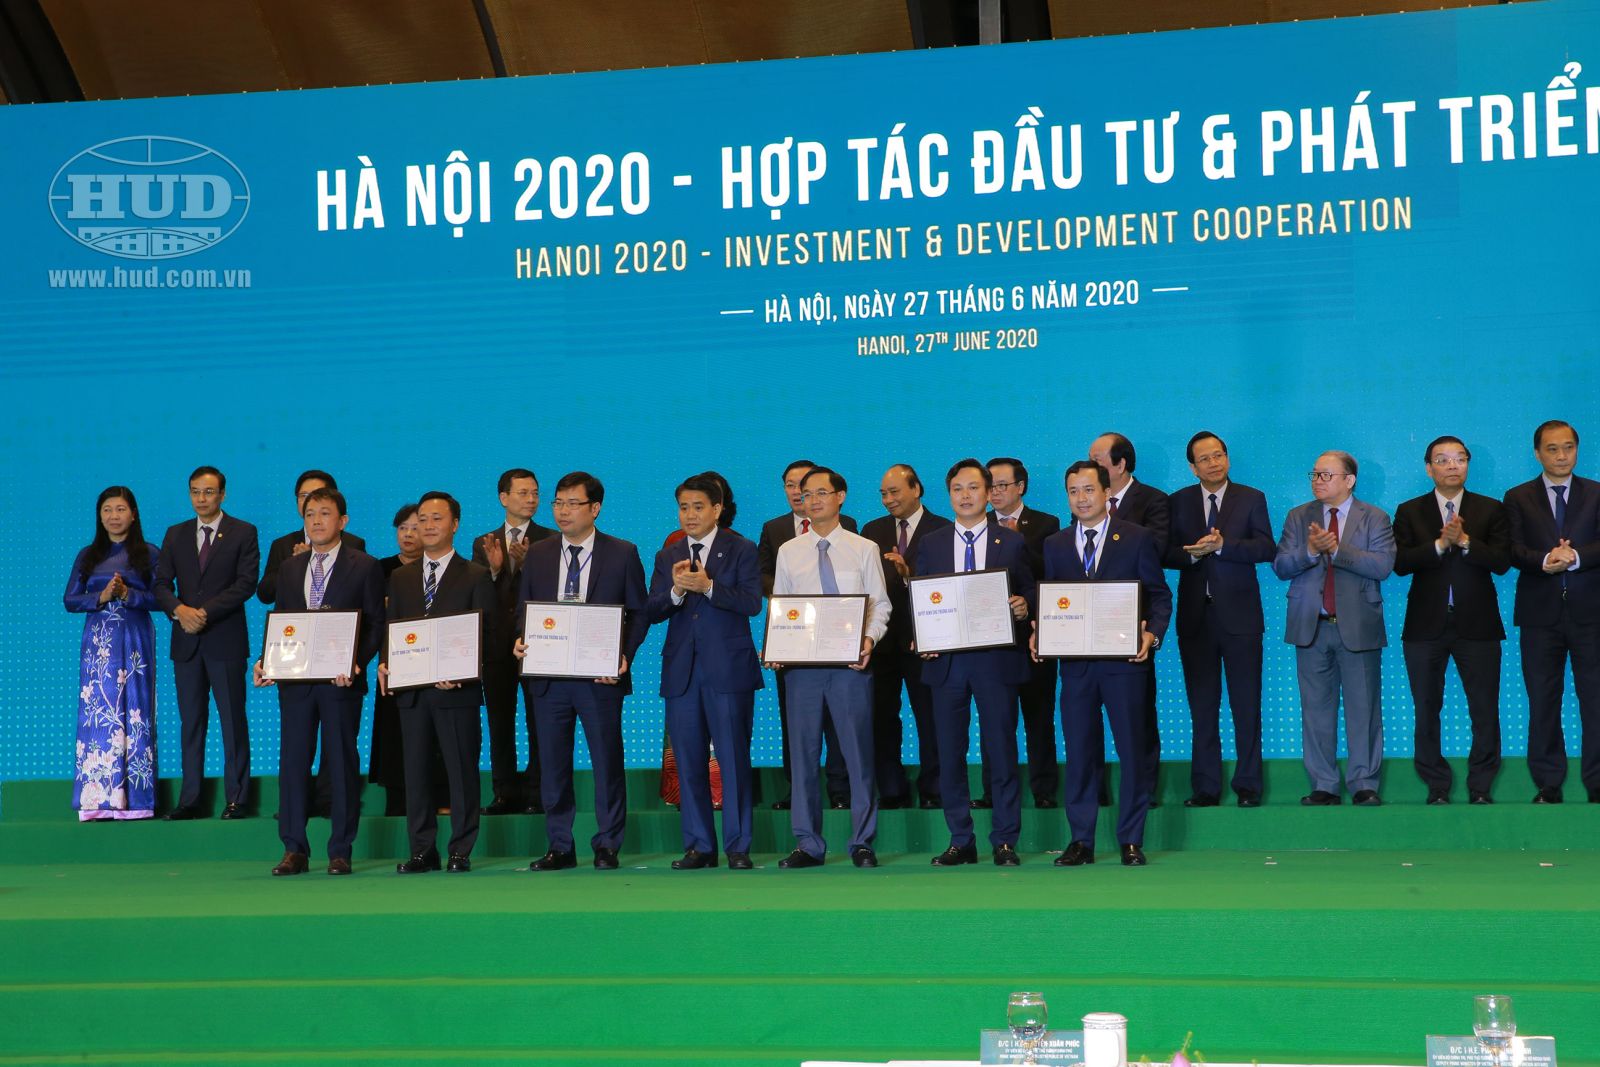 Hội nghị 'Hà Nội 2020 - Hợp tác đầu tư và phát triển': HUD ĐƯỢC TRAO HAI QUYẾT ĐỊNH CHỦ TRƯƠNG ĐẦU TƯ DỰ ÁN TẠI HÀ NỘI